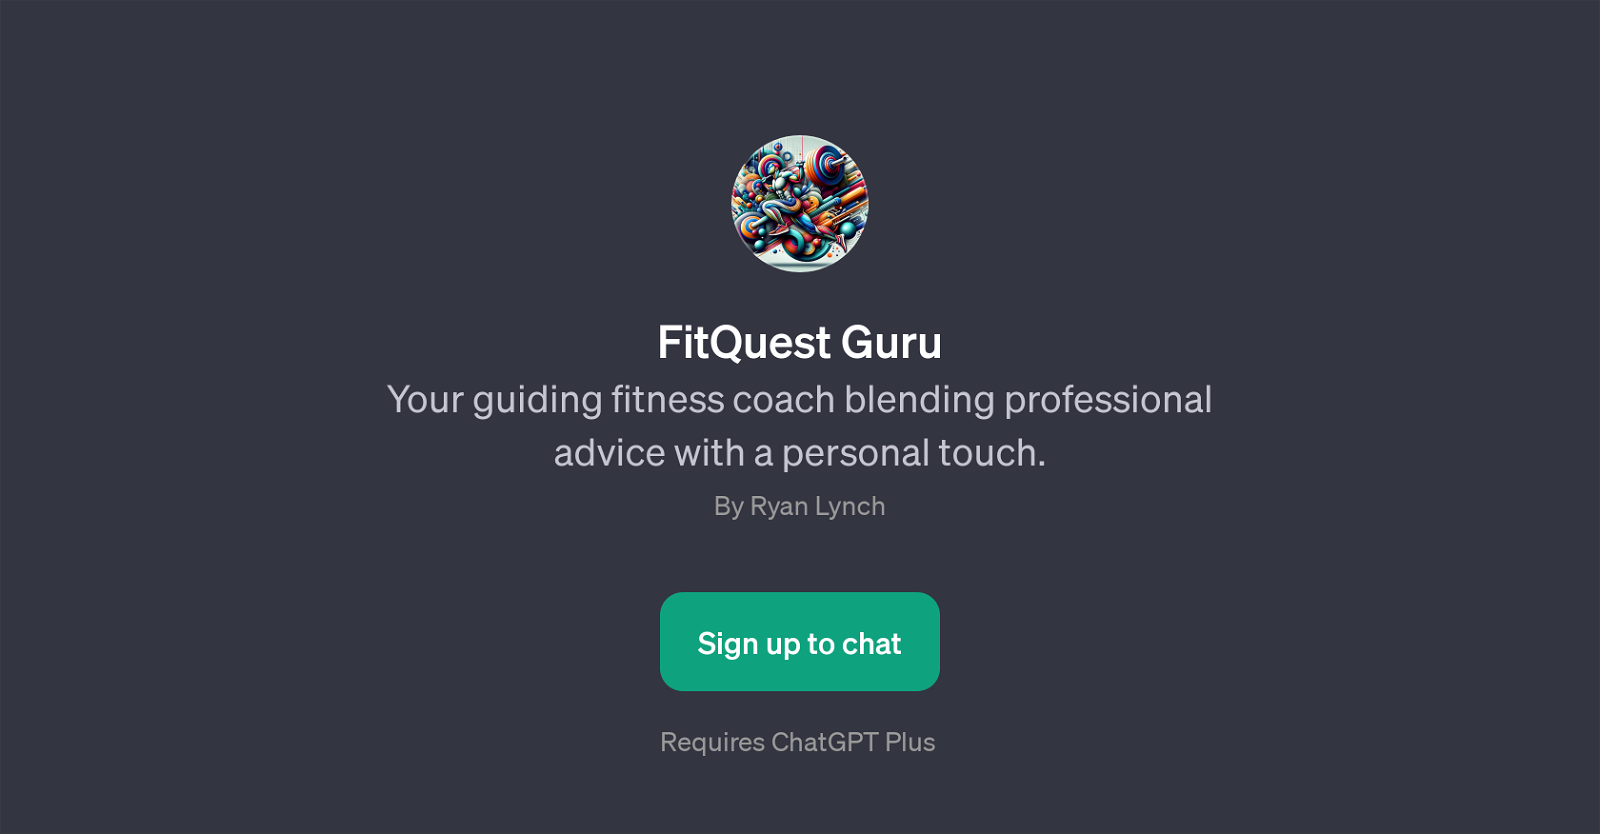 FitQuest Guru website